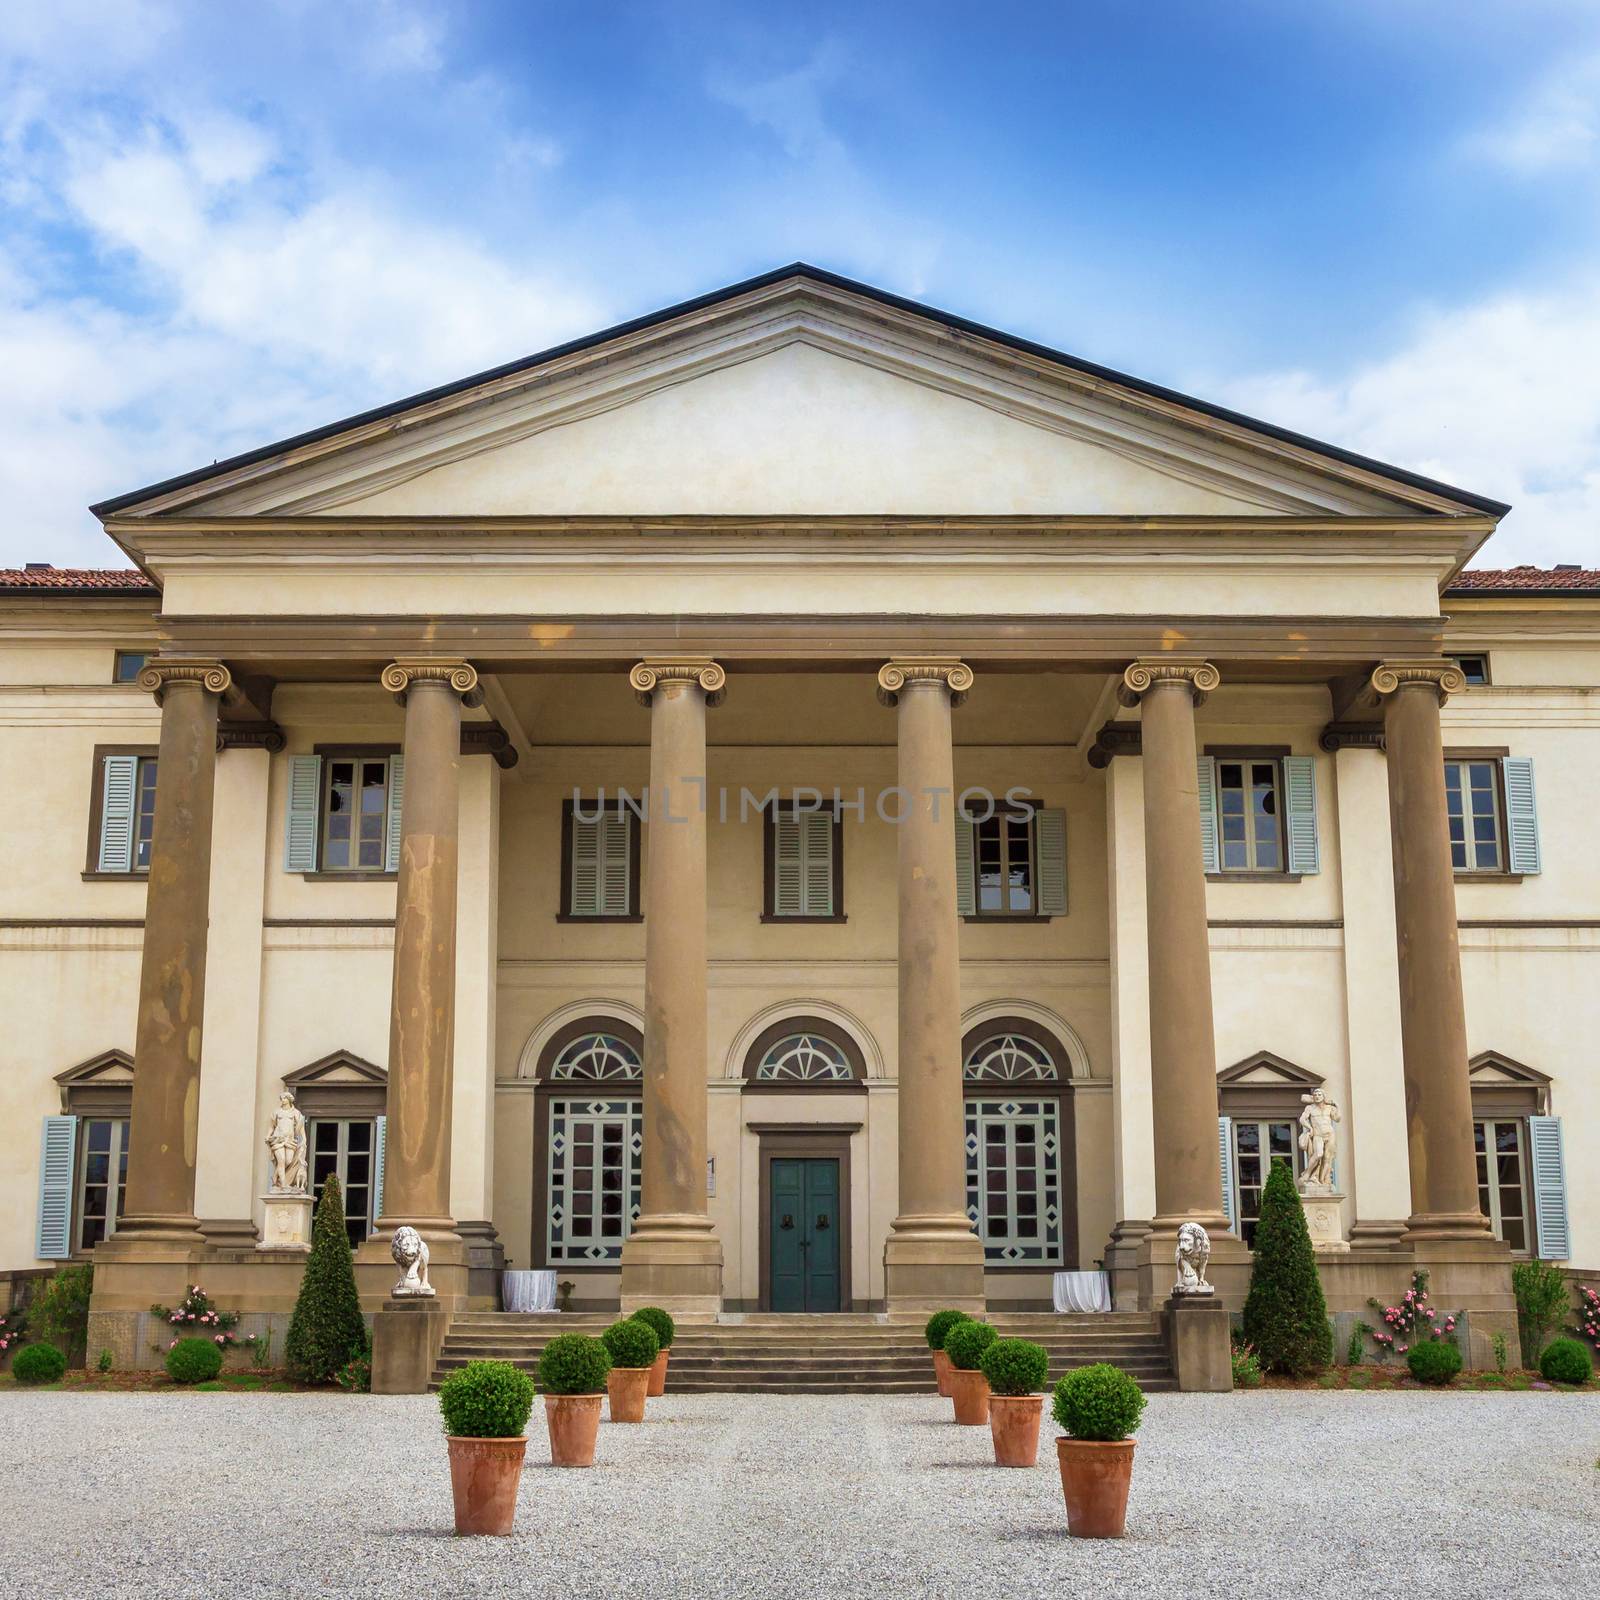 Italian villa in neoclassical style